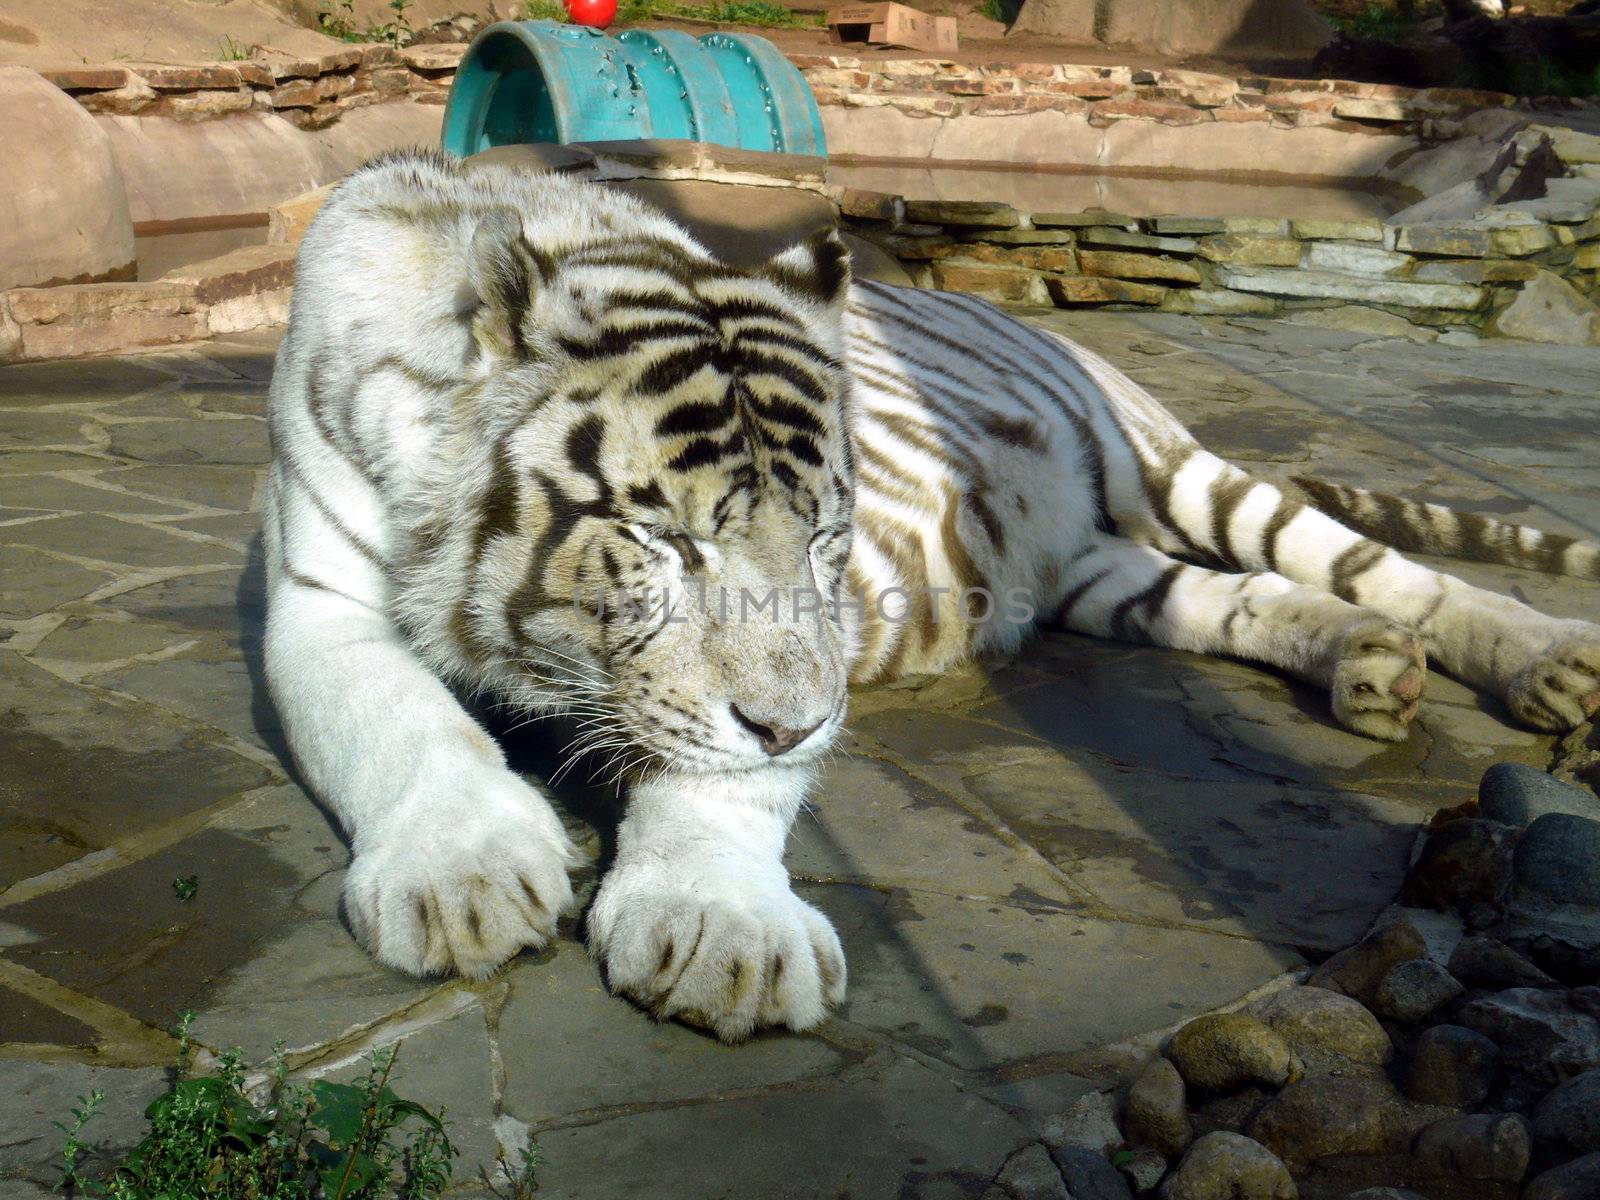 White tiger by Stoyanov